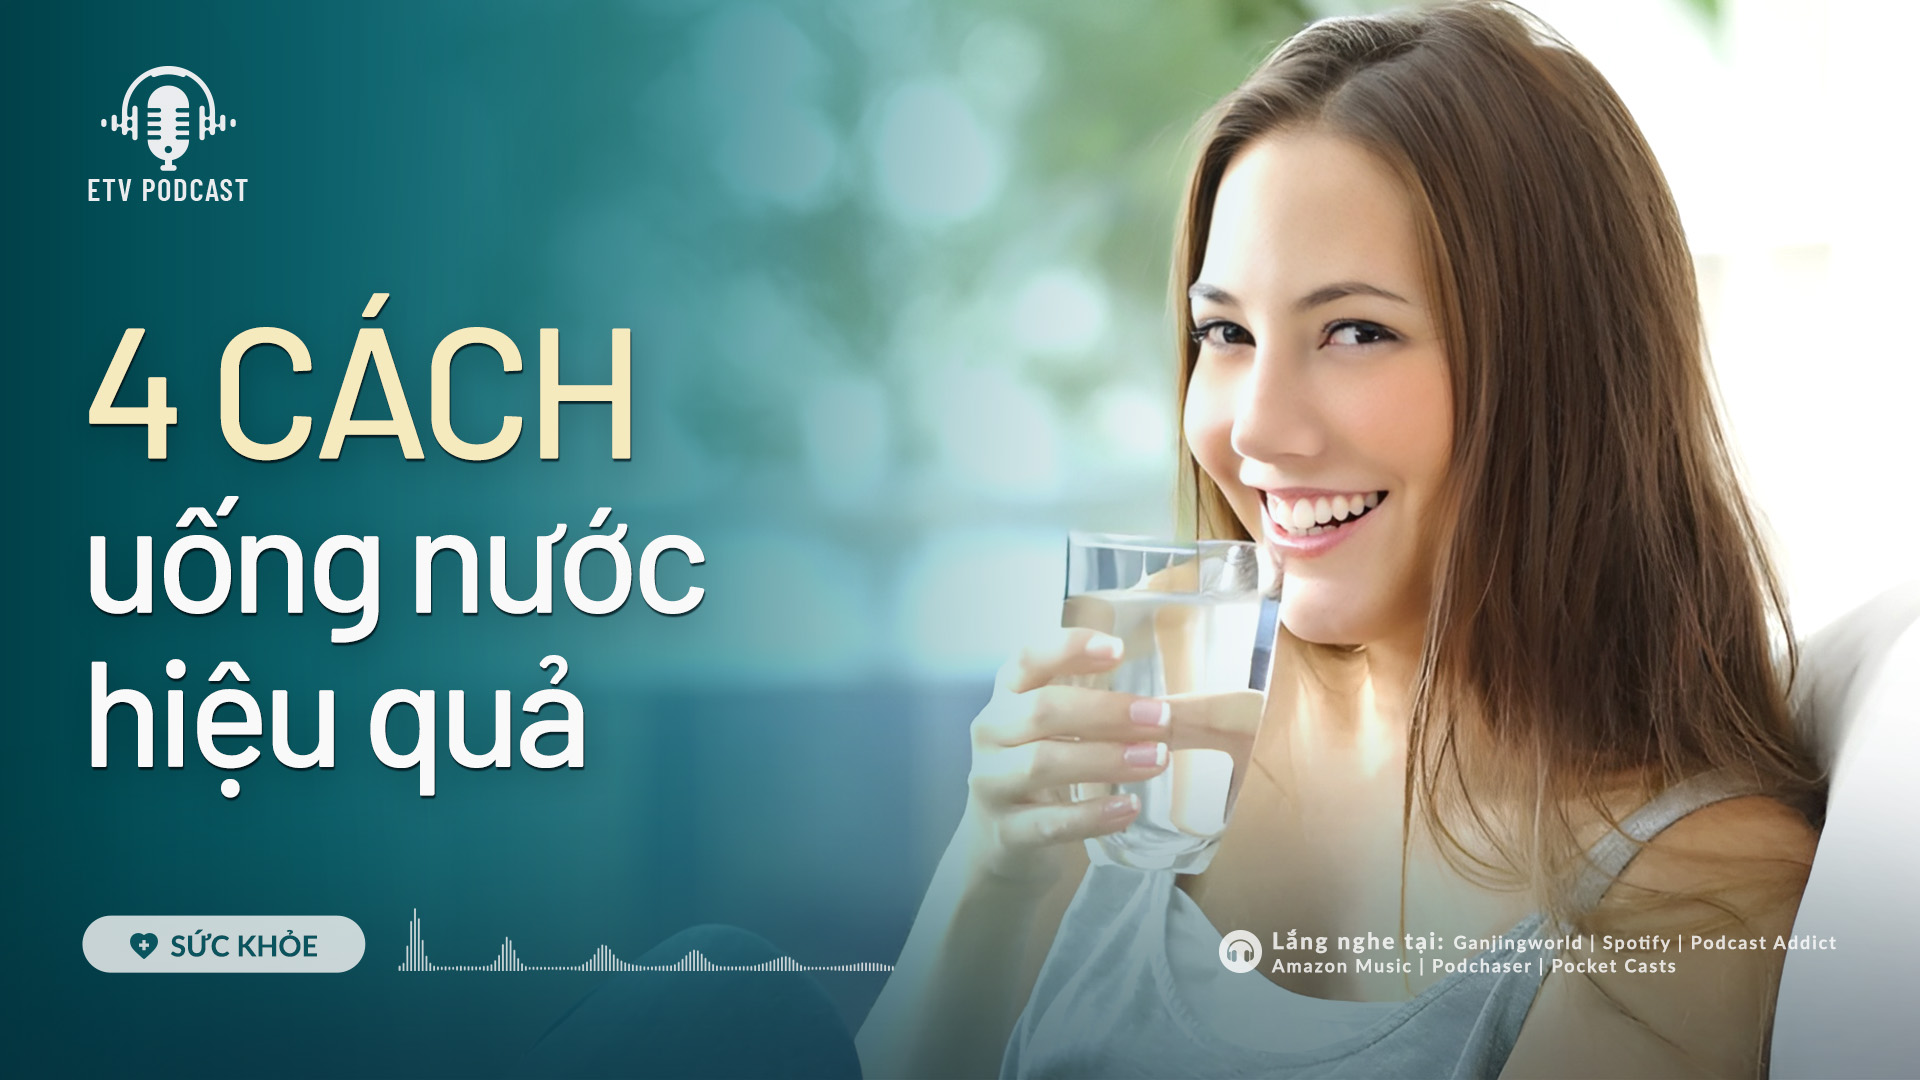 4 cách uống nước hiệu quả | Sức khỏe 